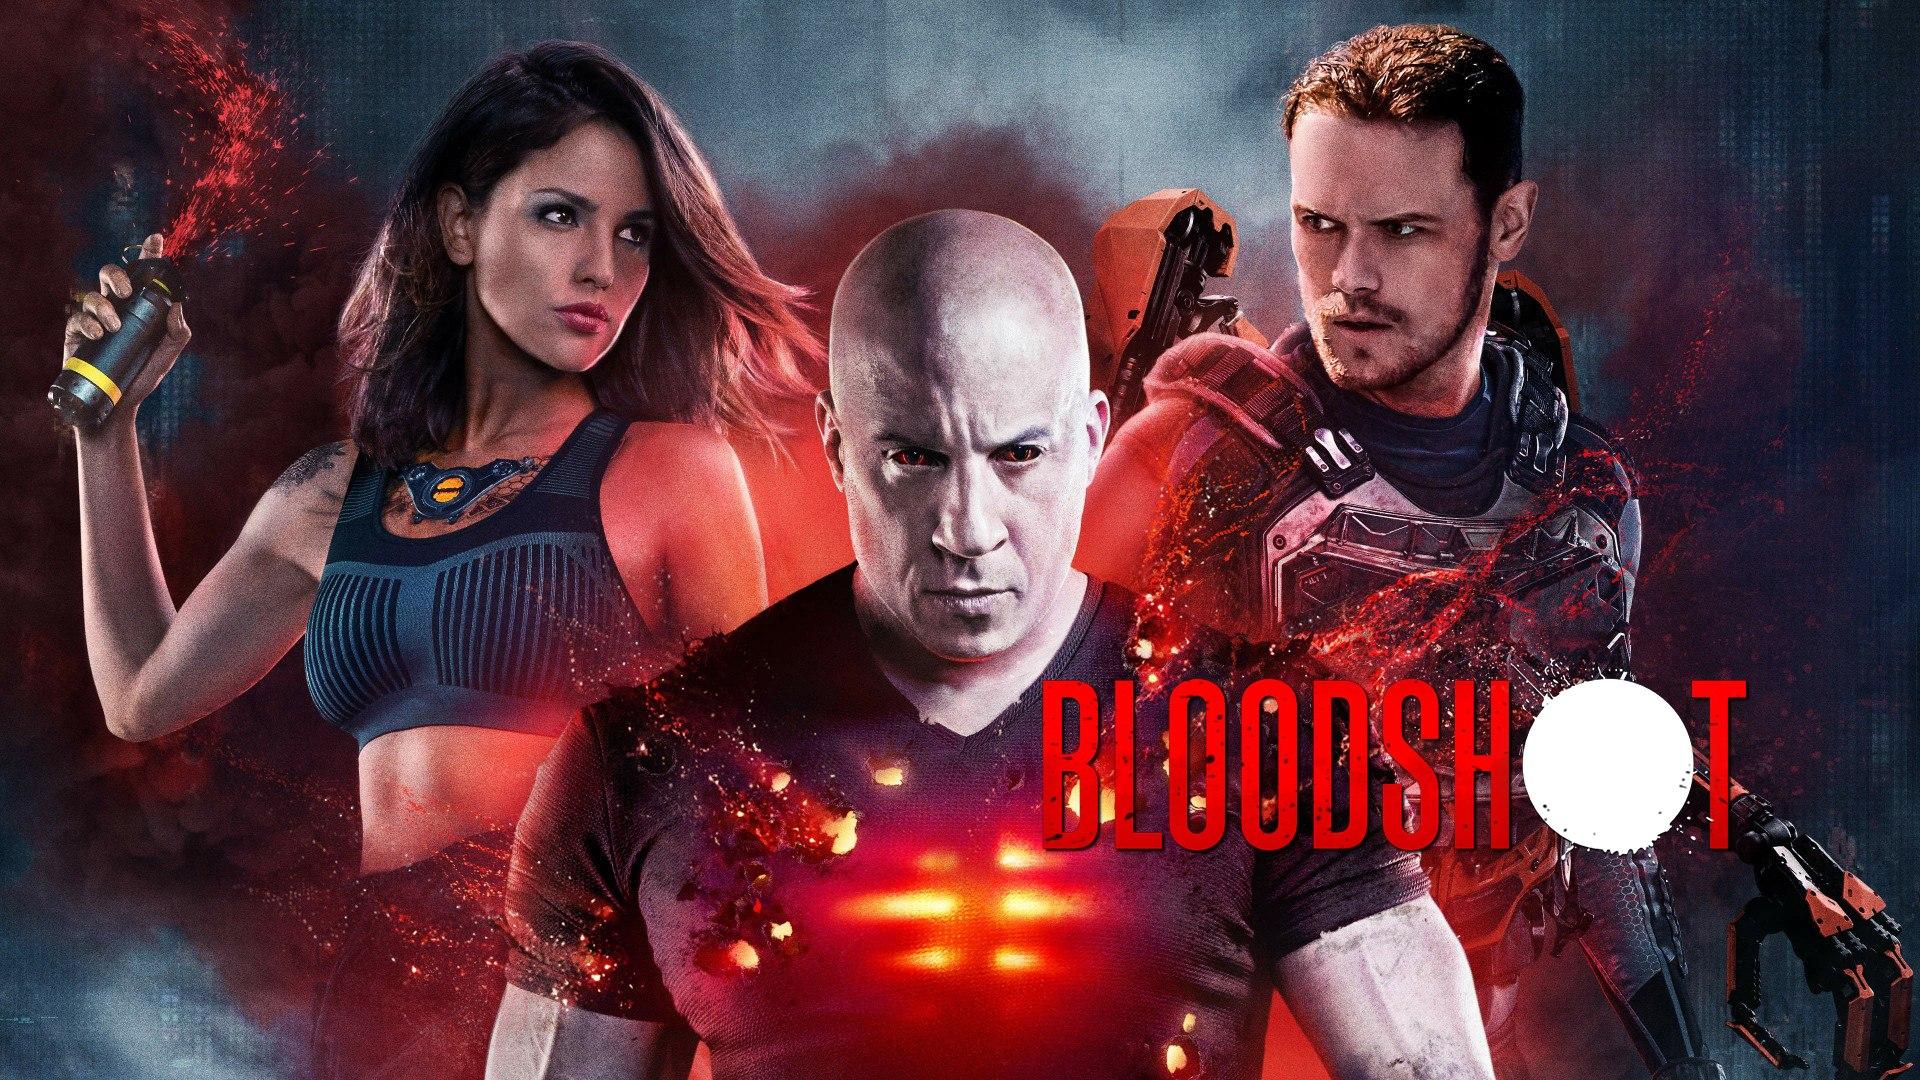 Lunedi 28 Dicembre 2020 Sky e Premium Cinema, Bloodshot